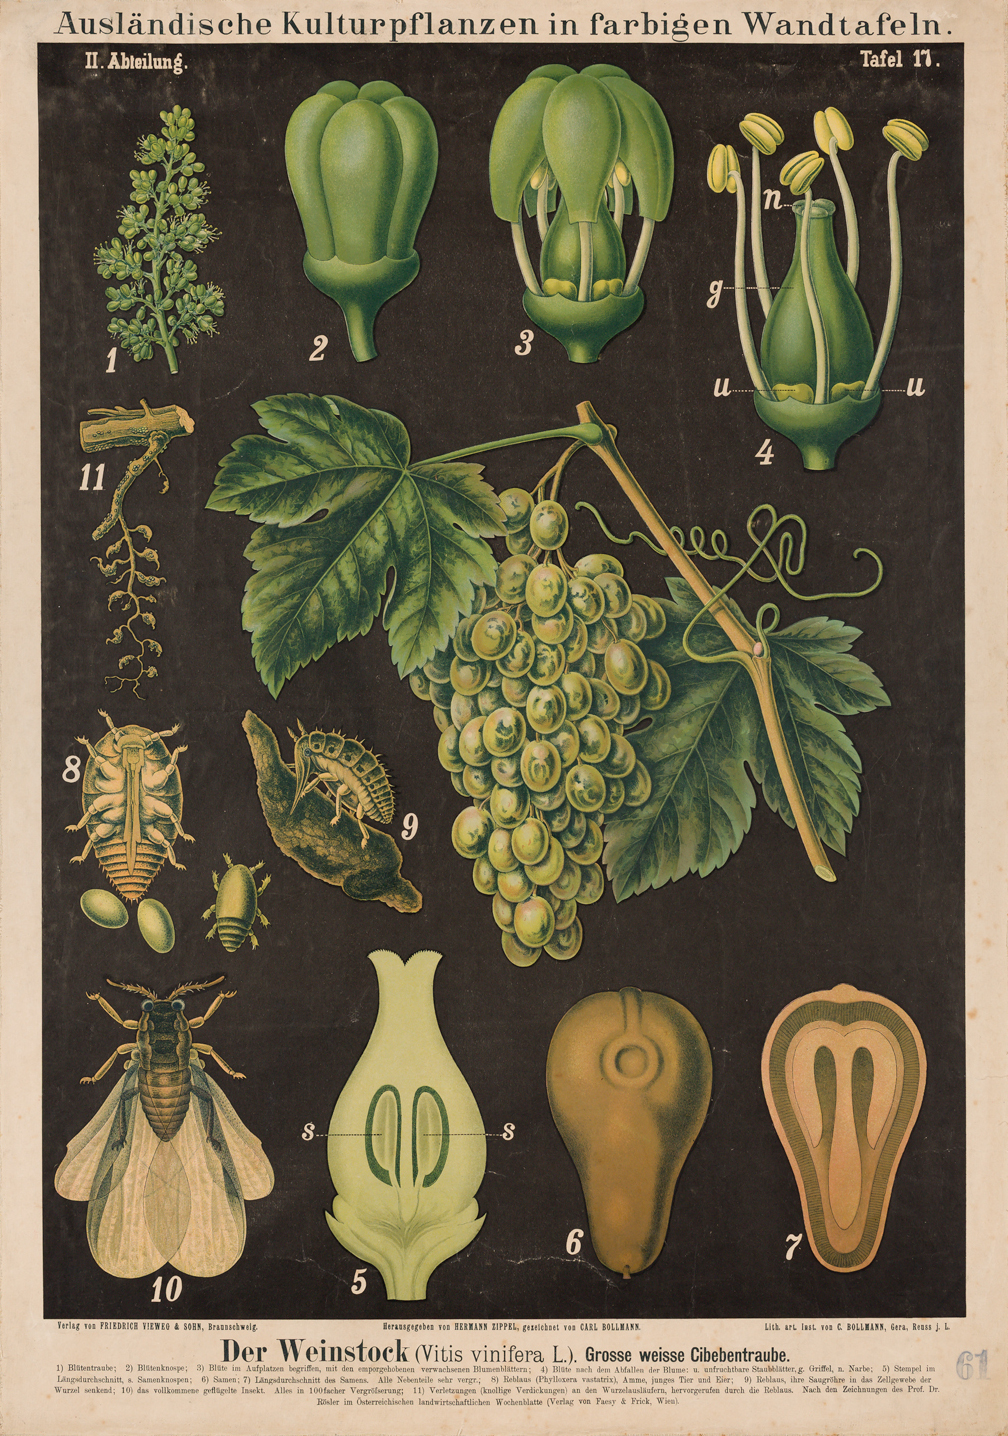 Tavola illustrata del grappolo dell'uva e delle sue parti